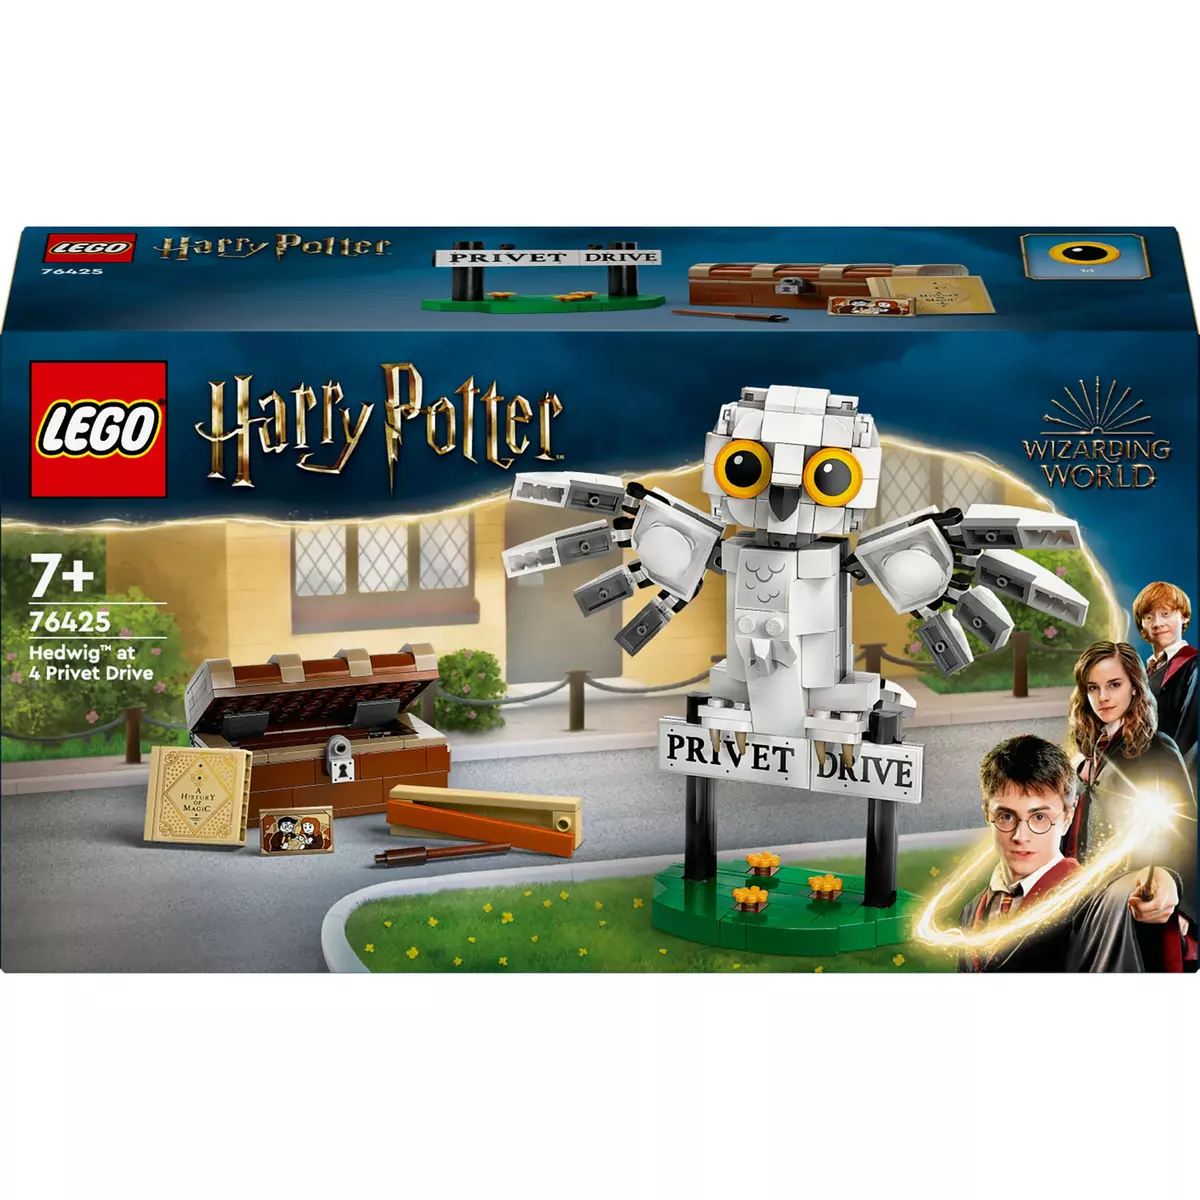 LEGO LEGO Harry Potter 76425 Hedwige au 4 Privet Drive, Jouet de Construction pour Enfants